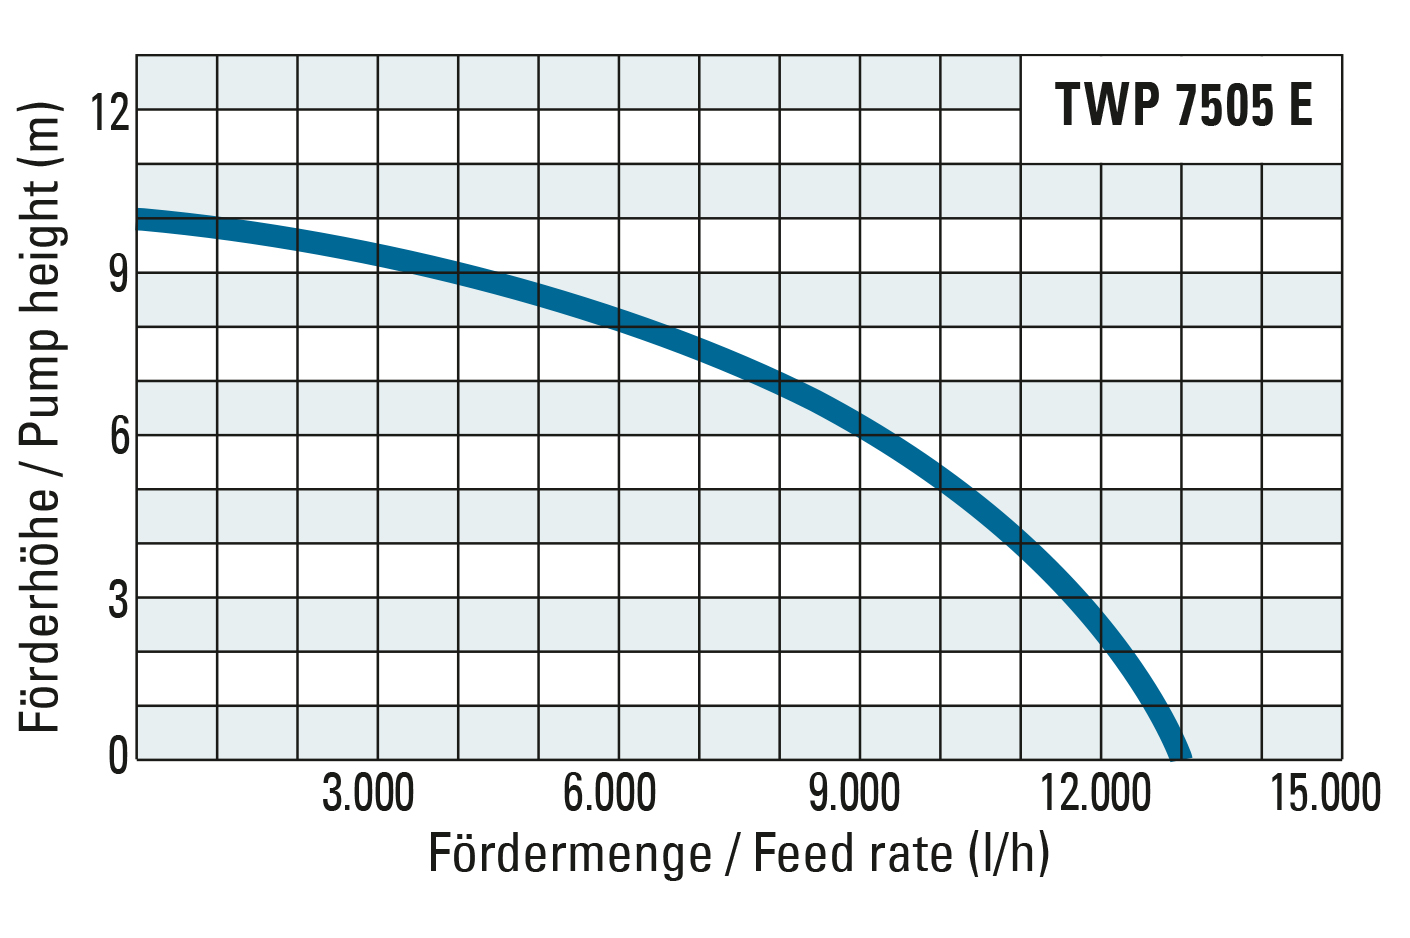 Förderhöhe und Fördermenge der TWP 7505 E